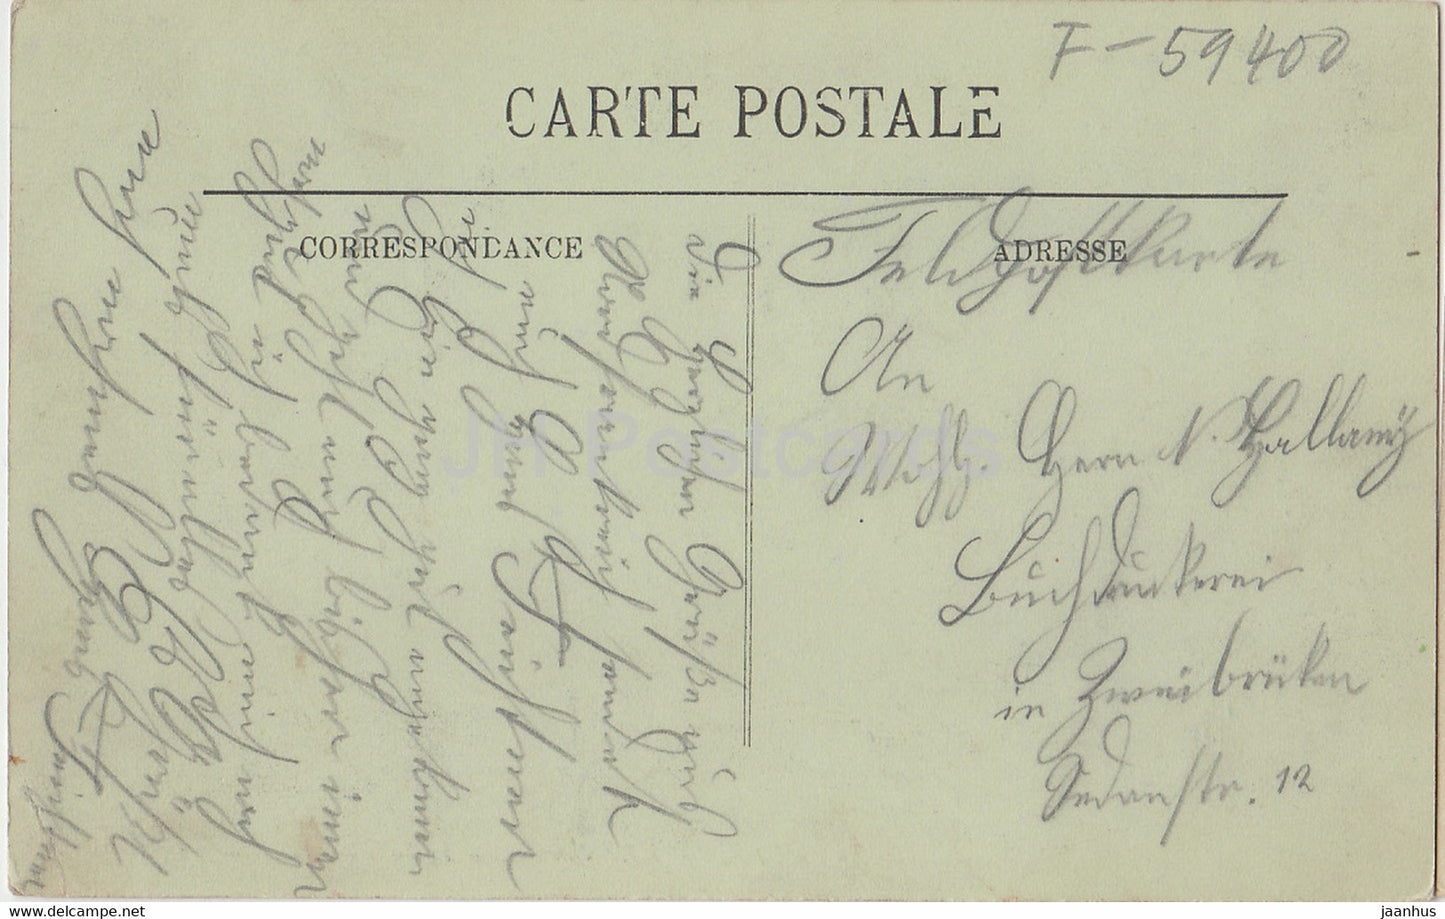 Cambrai - Hotel de Ville - La Salle des Fetes - 89 - old postcard - France - used